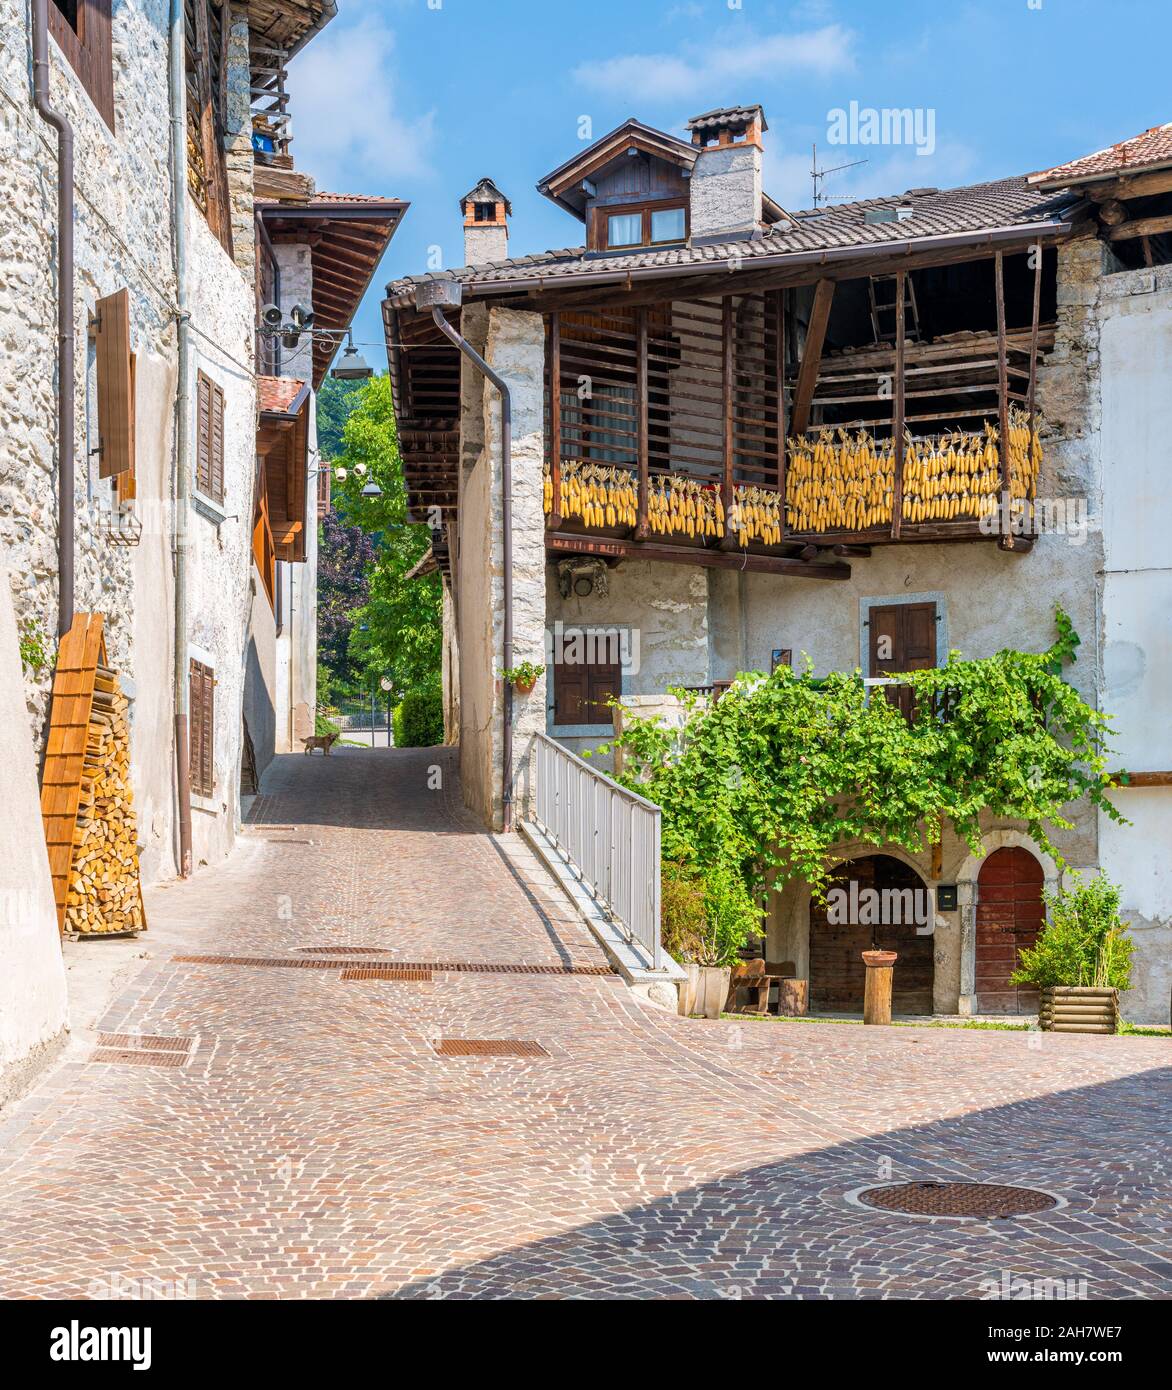 Le village pittoresque de Rango, dans la province de Trente, Trentin-Haut-Adige, Italie. Banque D'Images